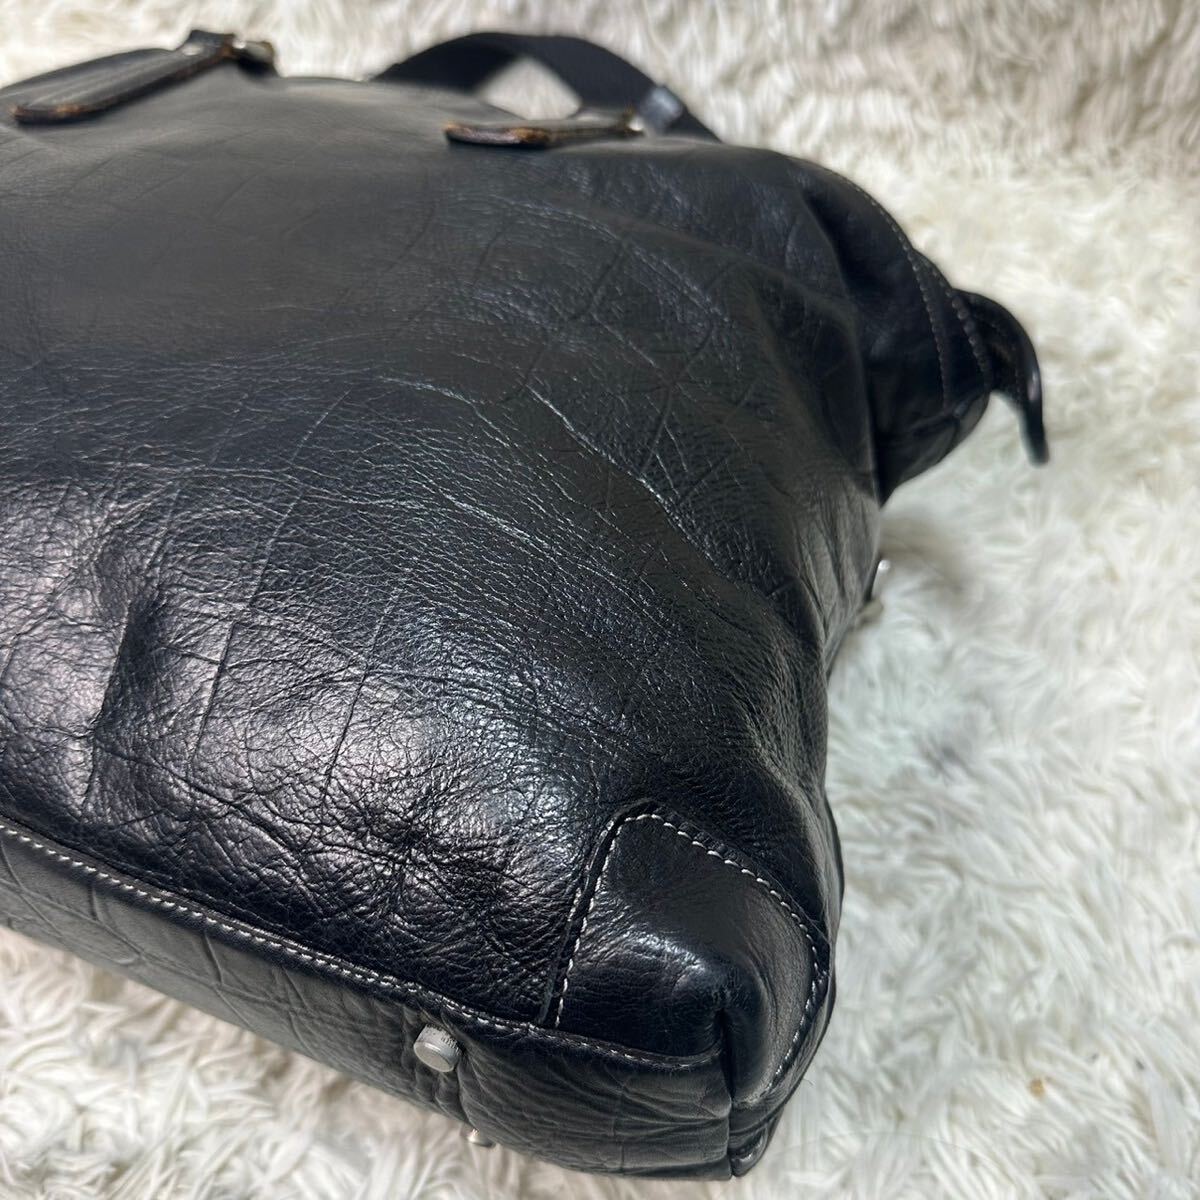 ani есть [ популярный дизайн ] aniary большая сумка портфель сумка на плечо 2way кожа черный ko type вдавлено . плечо .. ходить на работу мужской 